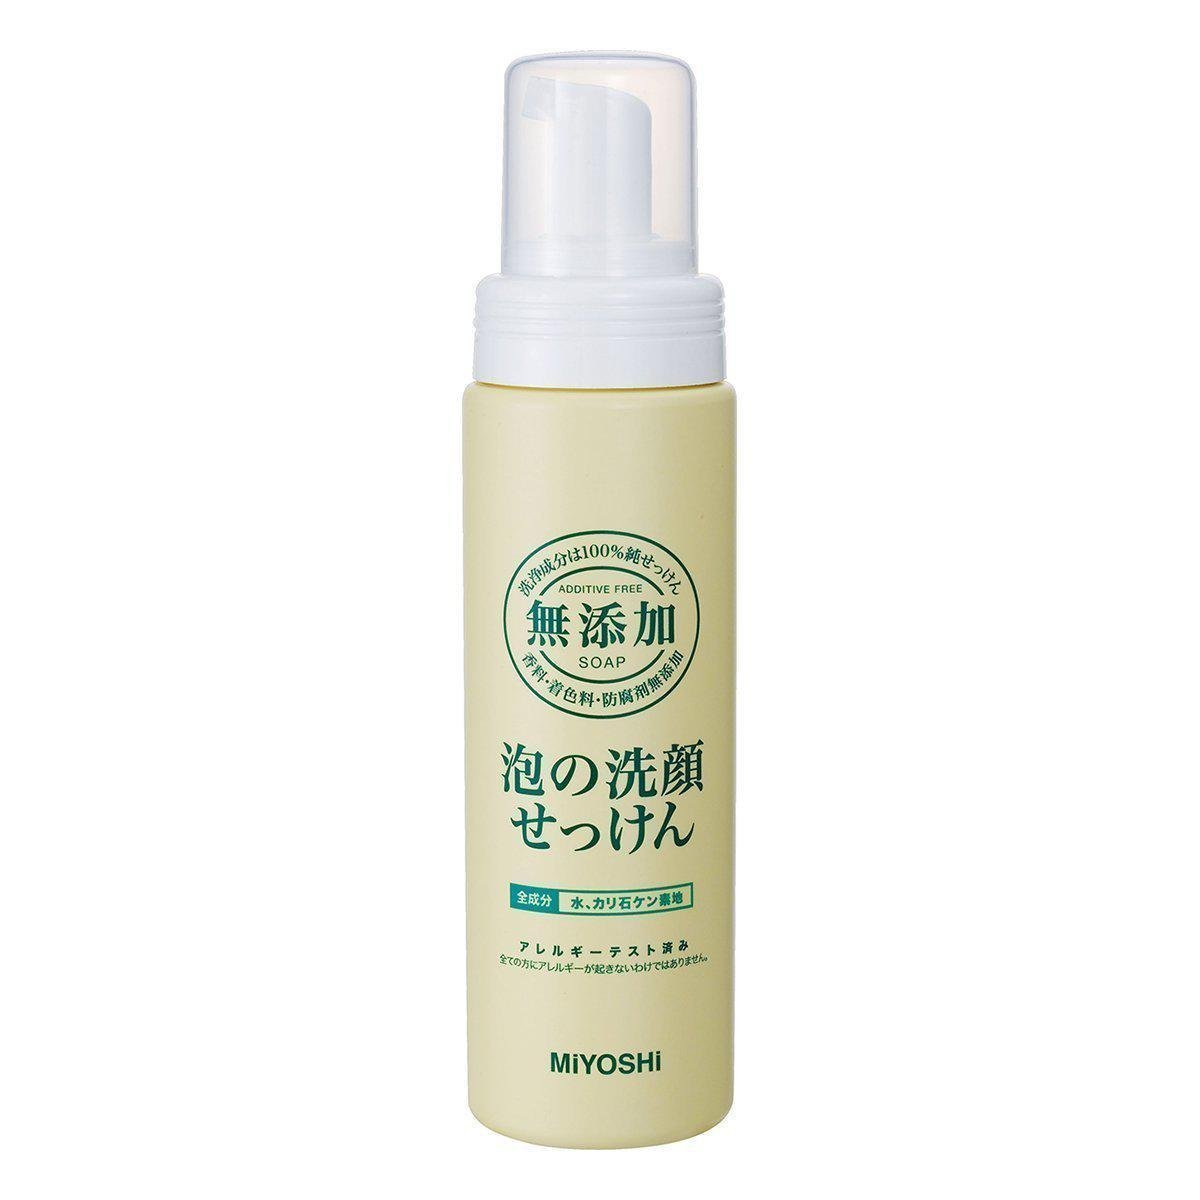 P-1-MYS-FFW-AF-200-Miyoshi Soap Facial Foaming Wash Additive-Free Pump Bottle 200ml.jpg